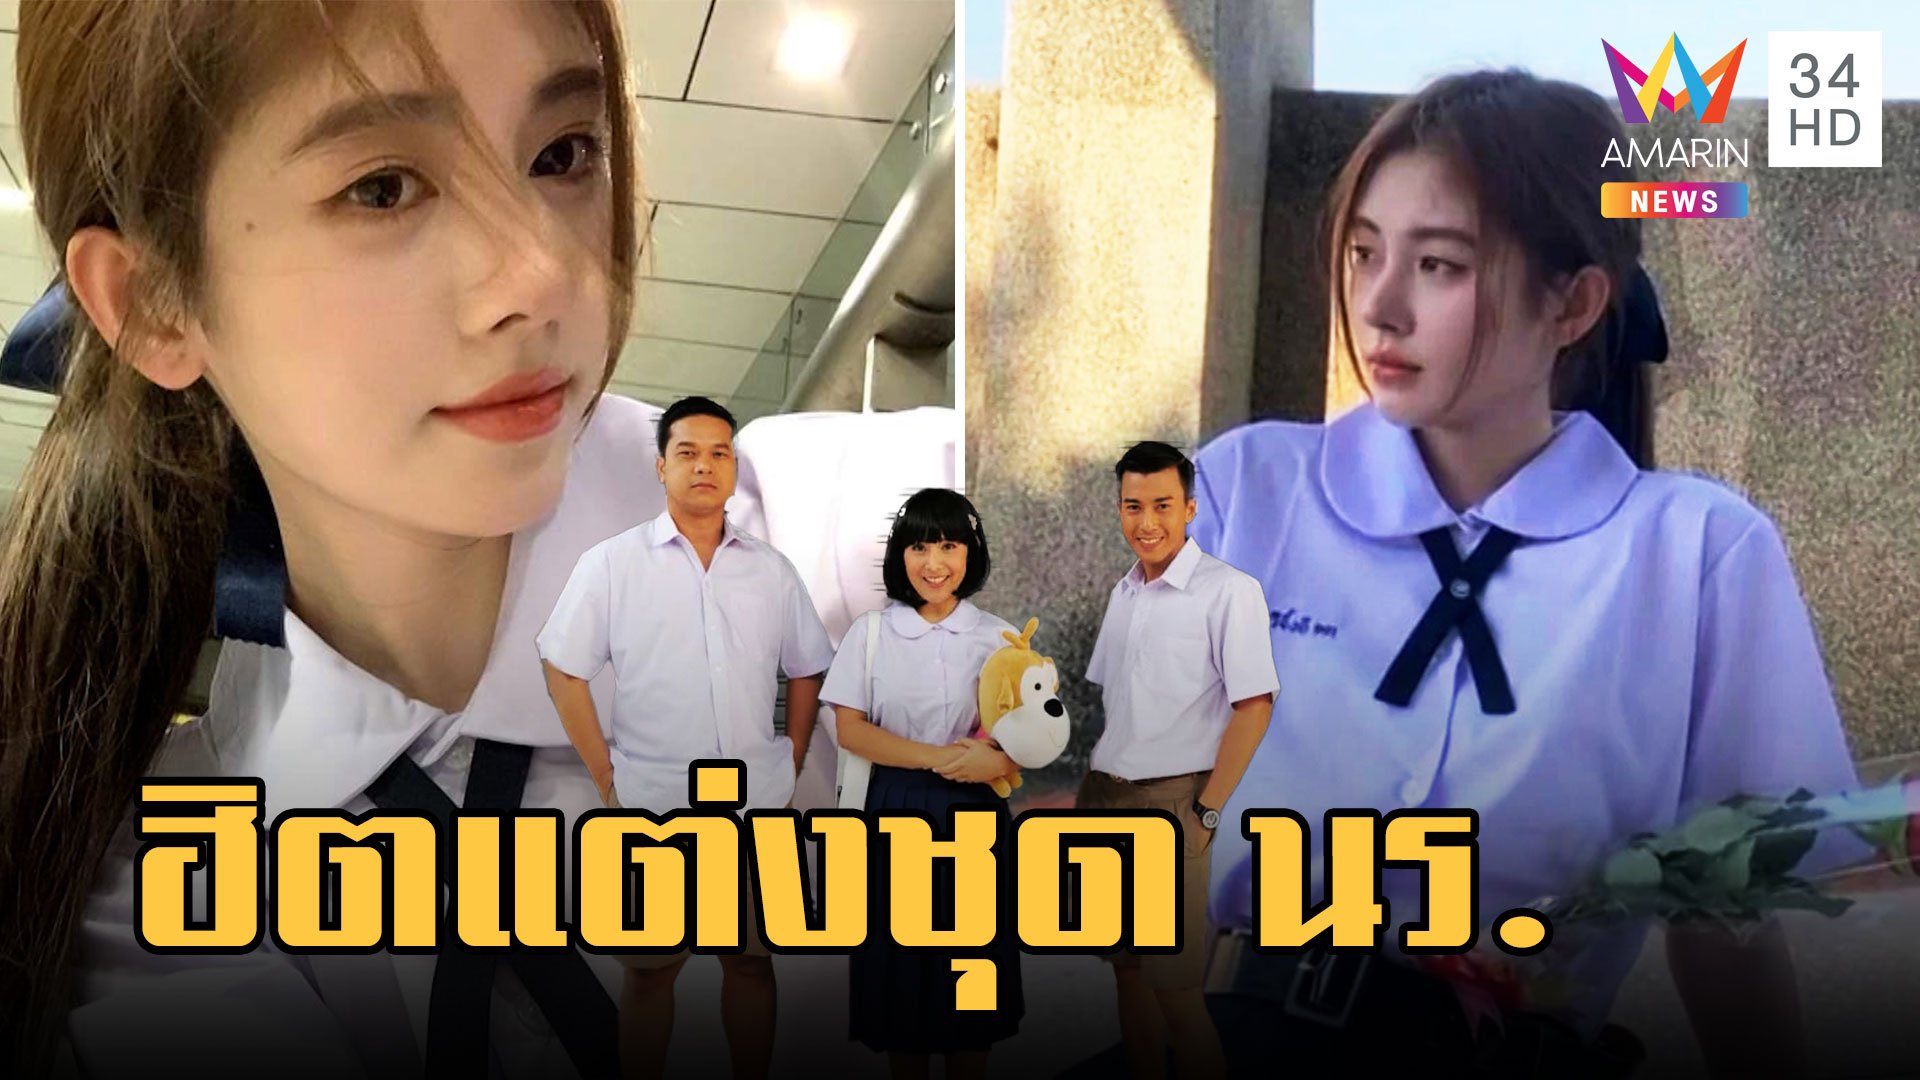 เทรนใหม่ นทท.จีน ฮิตแต่งชุดนักเรียนไทย | ข่าวอรุณอมรินทร์ | 8 มี.ค. 66 | AMARIN TVHD34